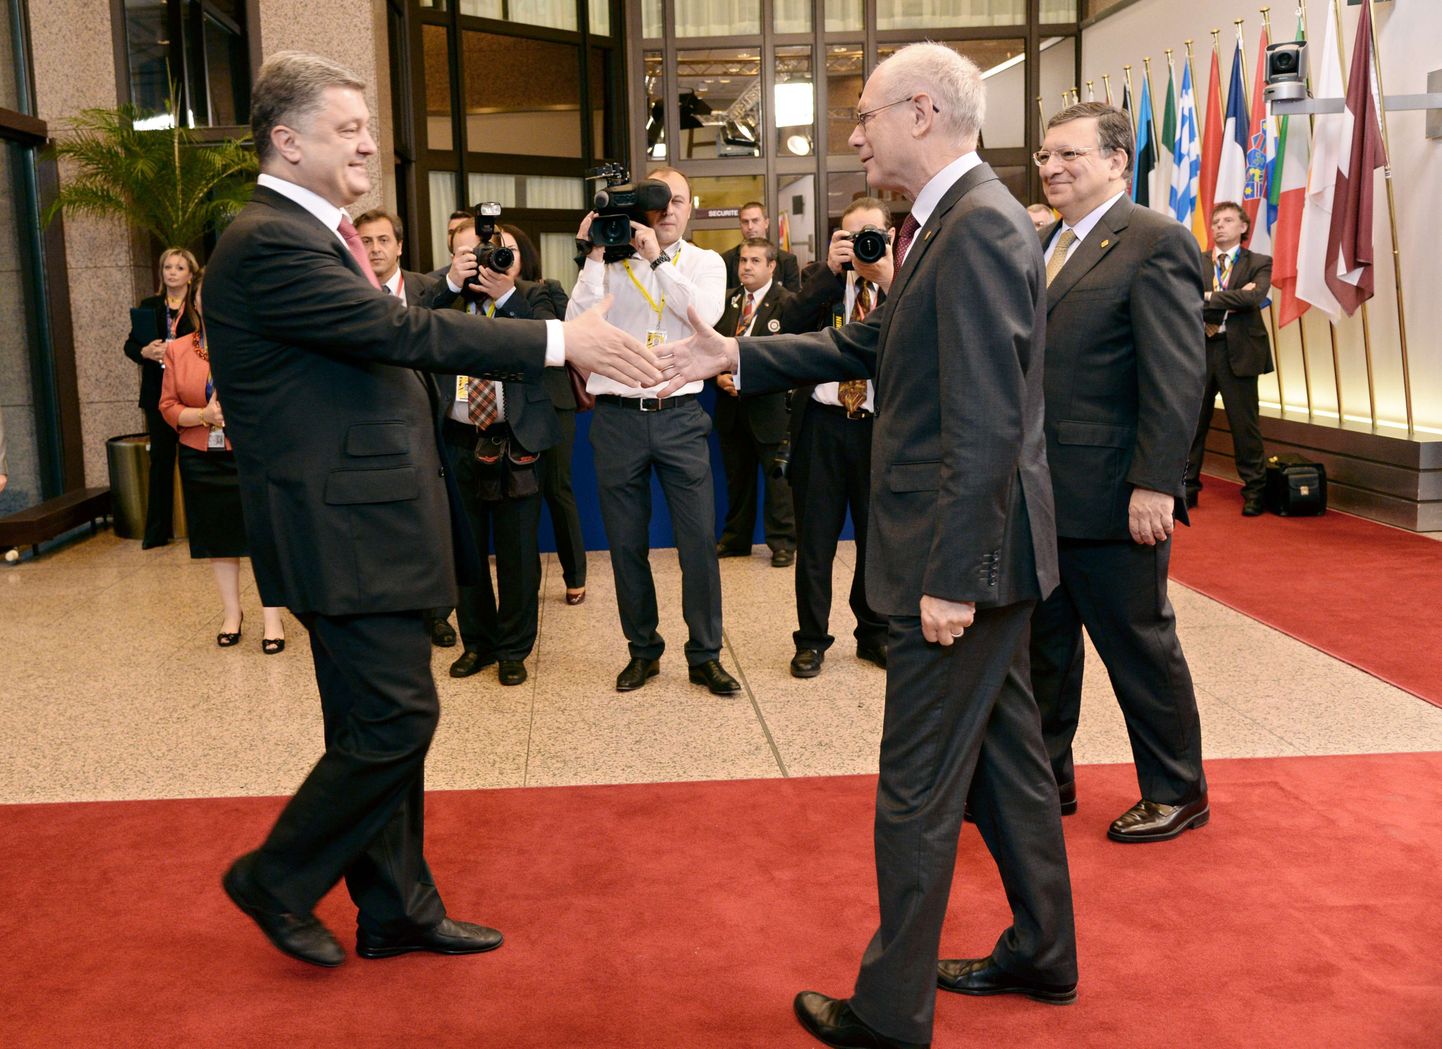 Прездент Европейской Комиссии Жозе Мануэль Баррозо и президент Европейского Совета Херман Ван Ромрей приветствуют президента Украины в Брюсселе.